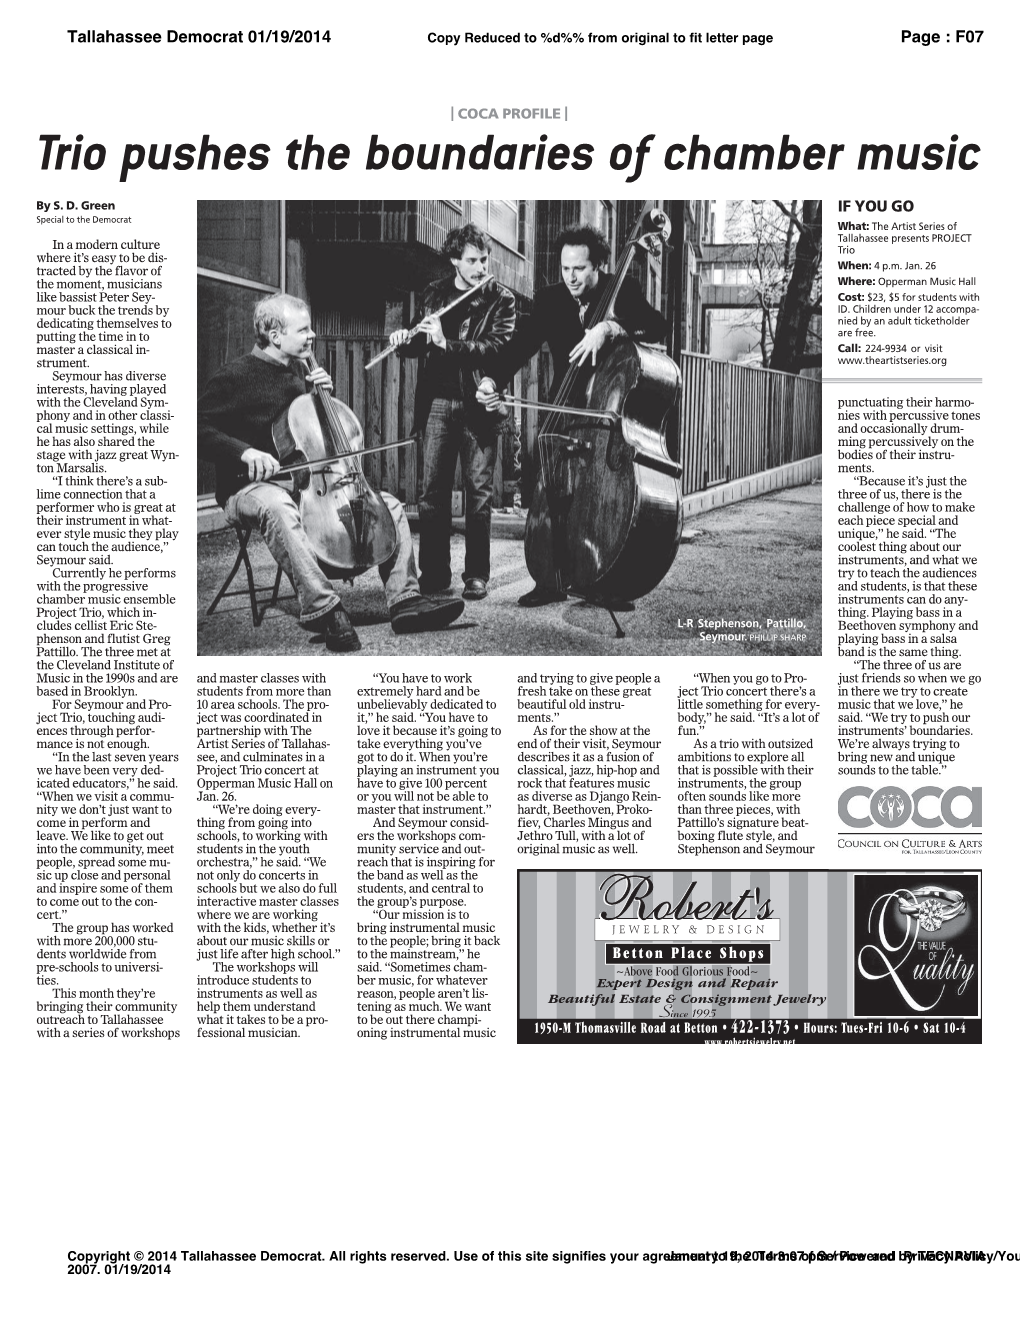 Trio Pushes the Boundaries of Chamber Music